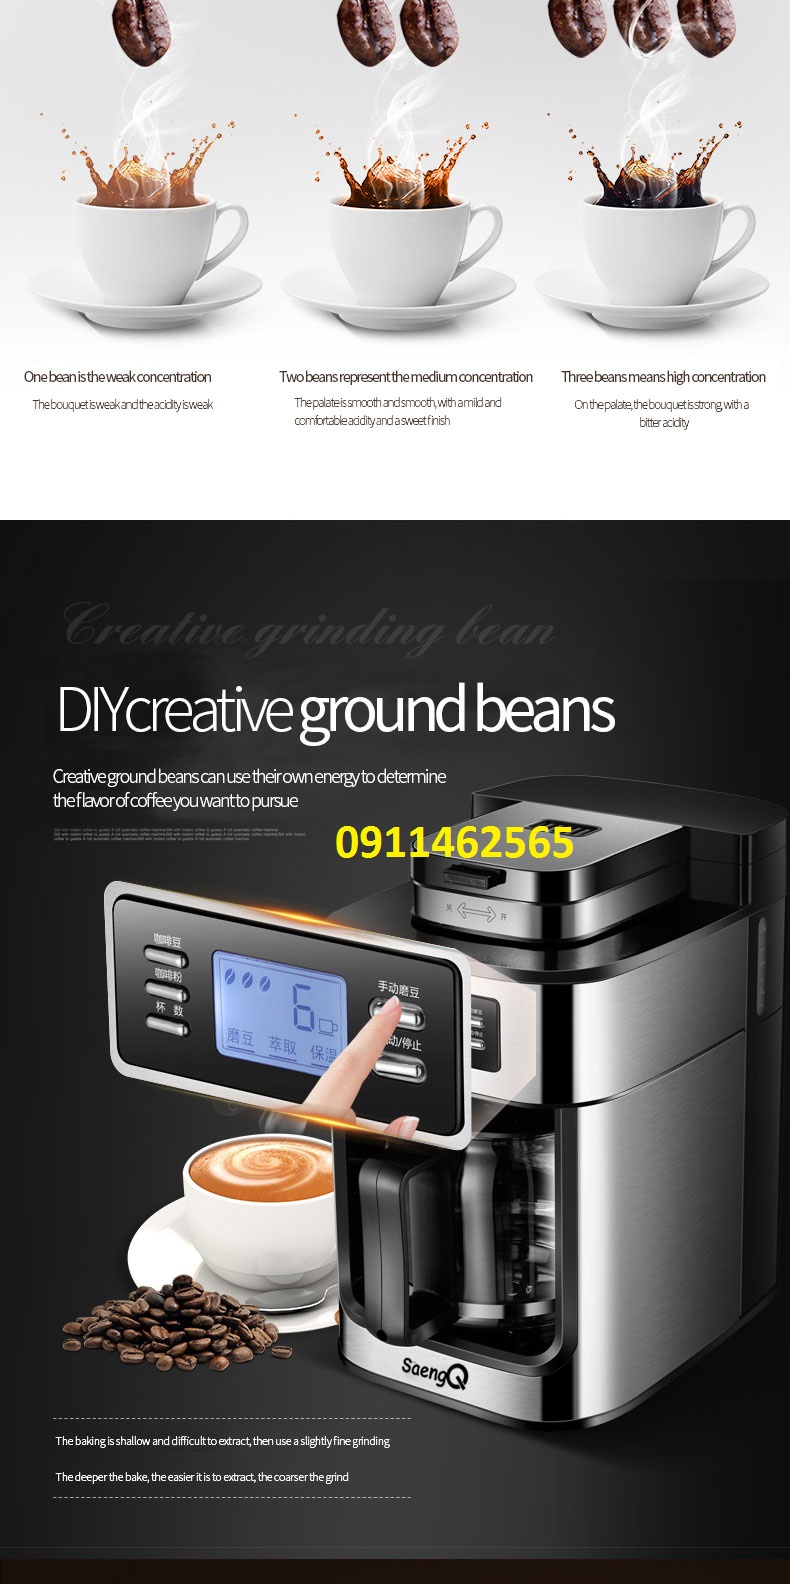 máy pha cà phê-xay cà phê hạt trực tiếp 2 in 1 BG-315T bảo hành 1 năm